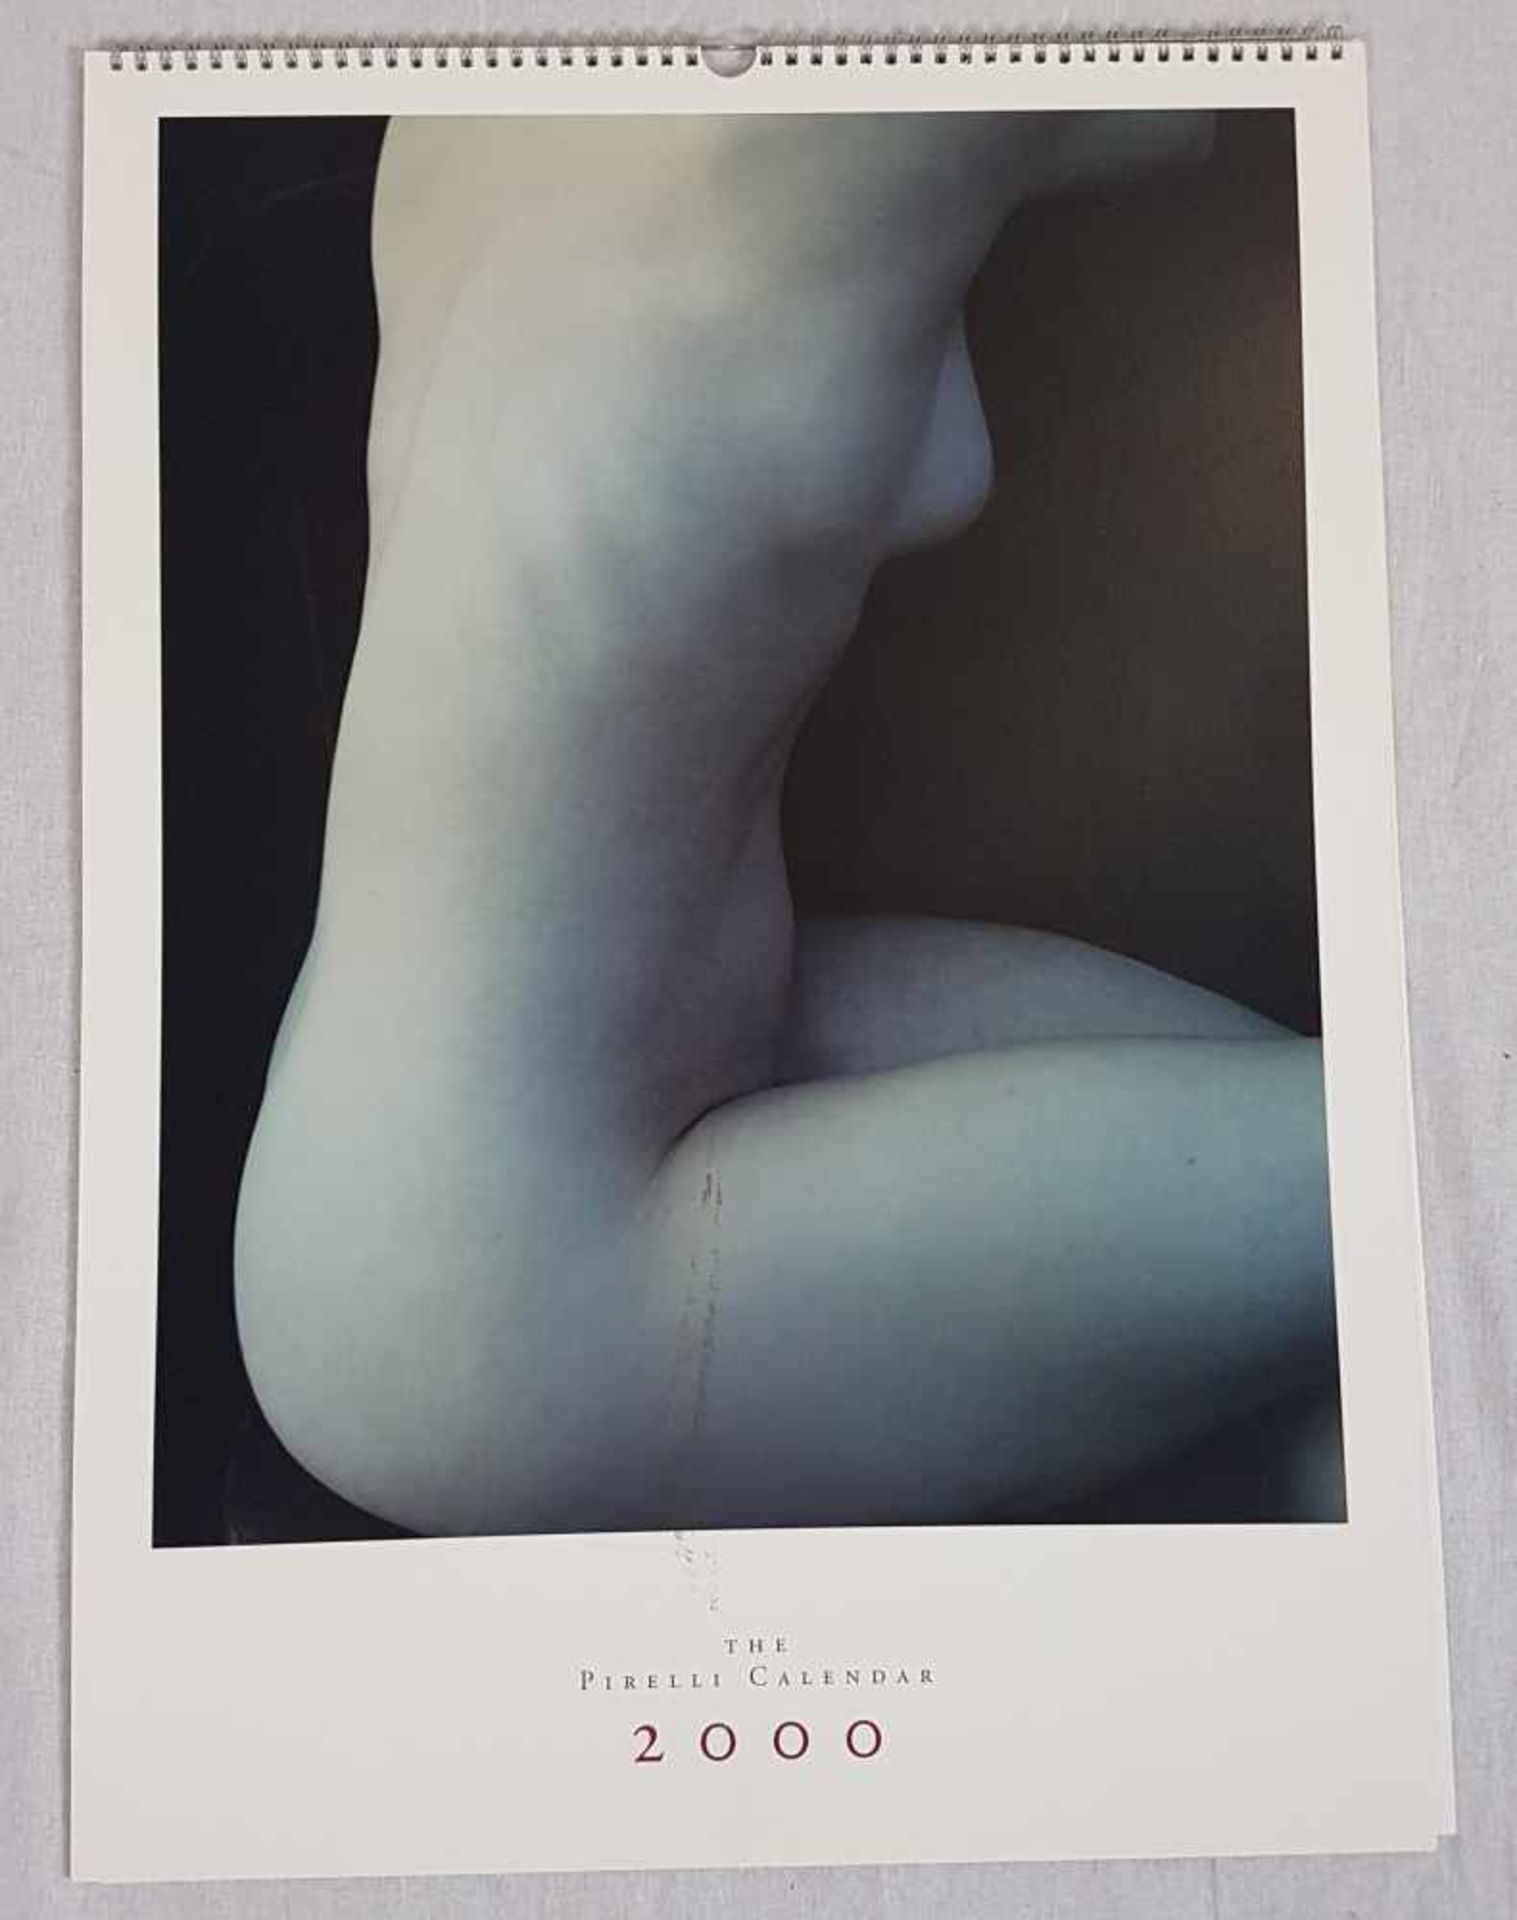 Pirelli-Kalender 2000 - mit Studioaufnahmen von Annie Leibovitz, erotische Aktdarstellungen, unter